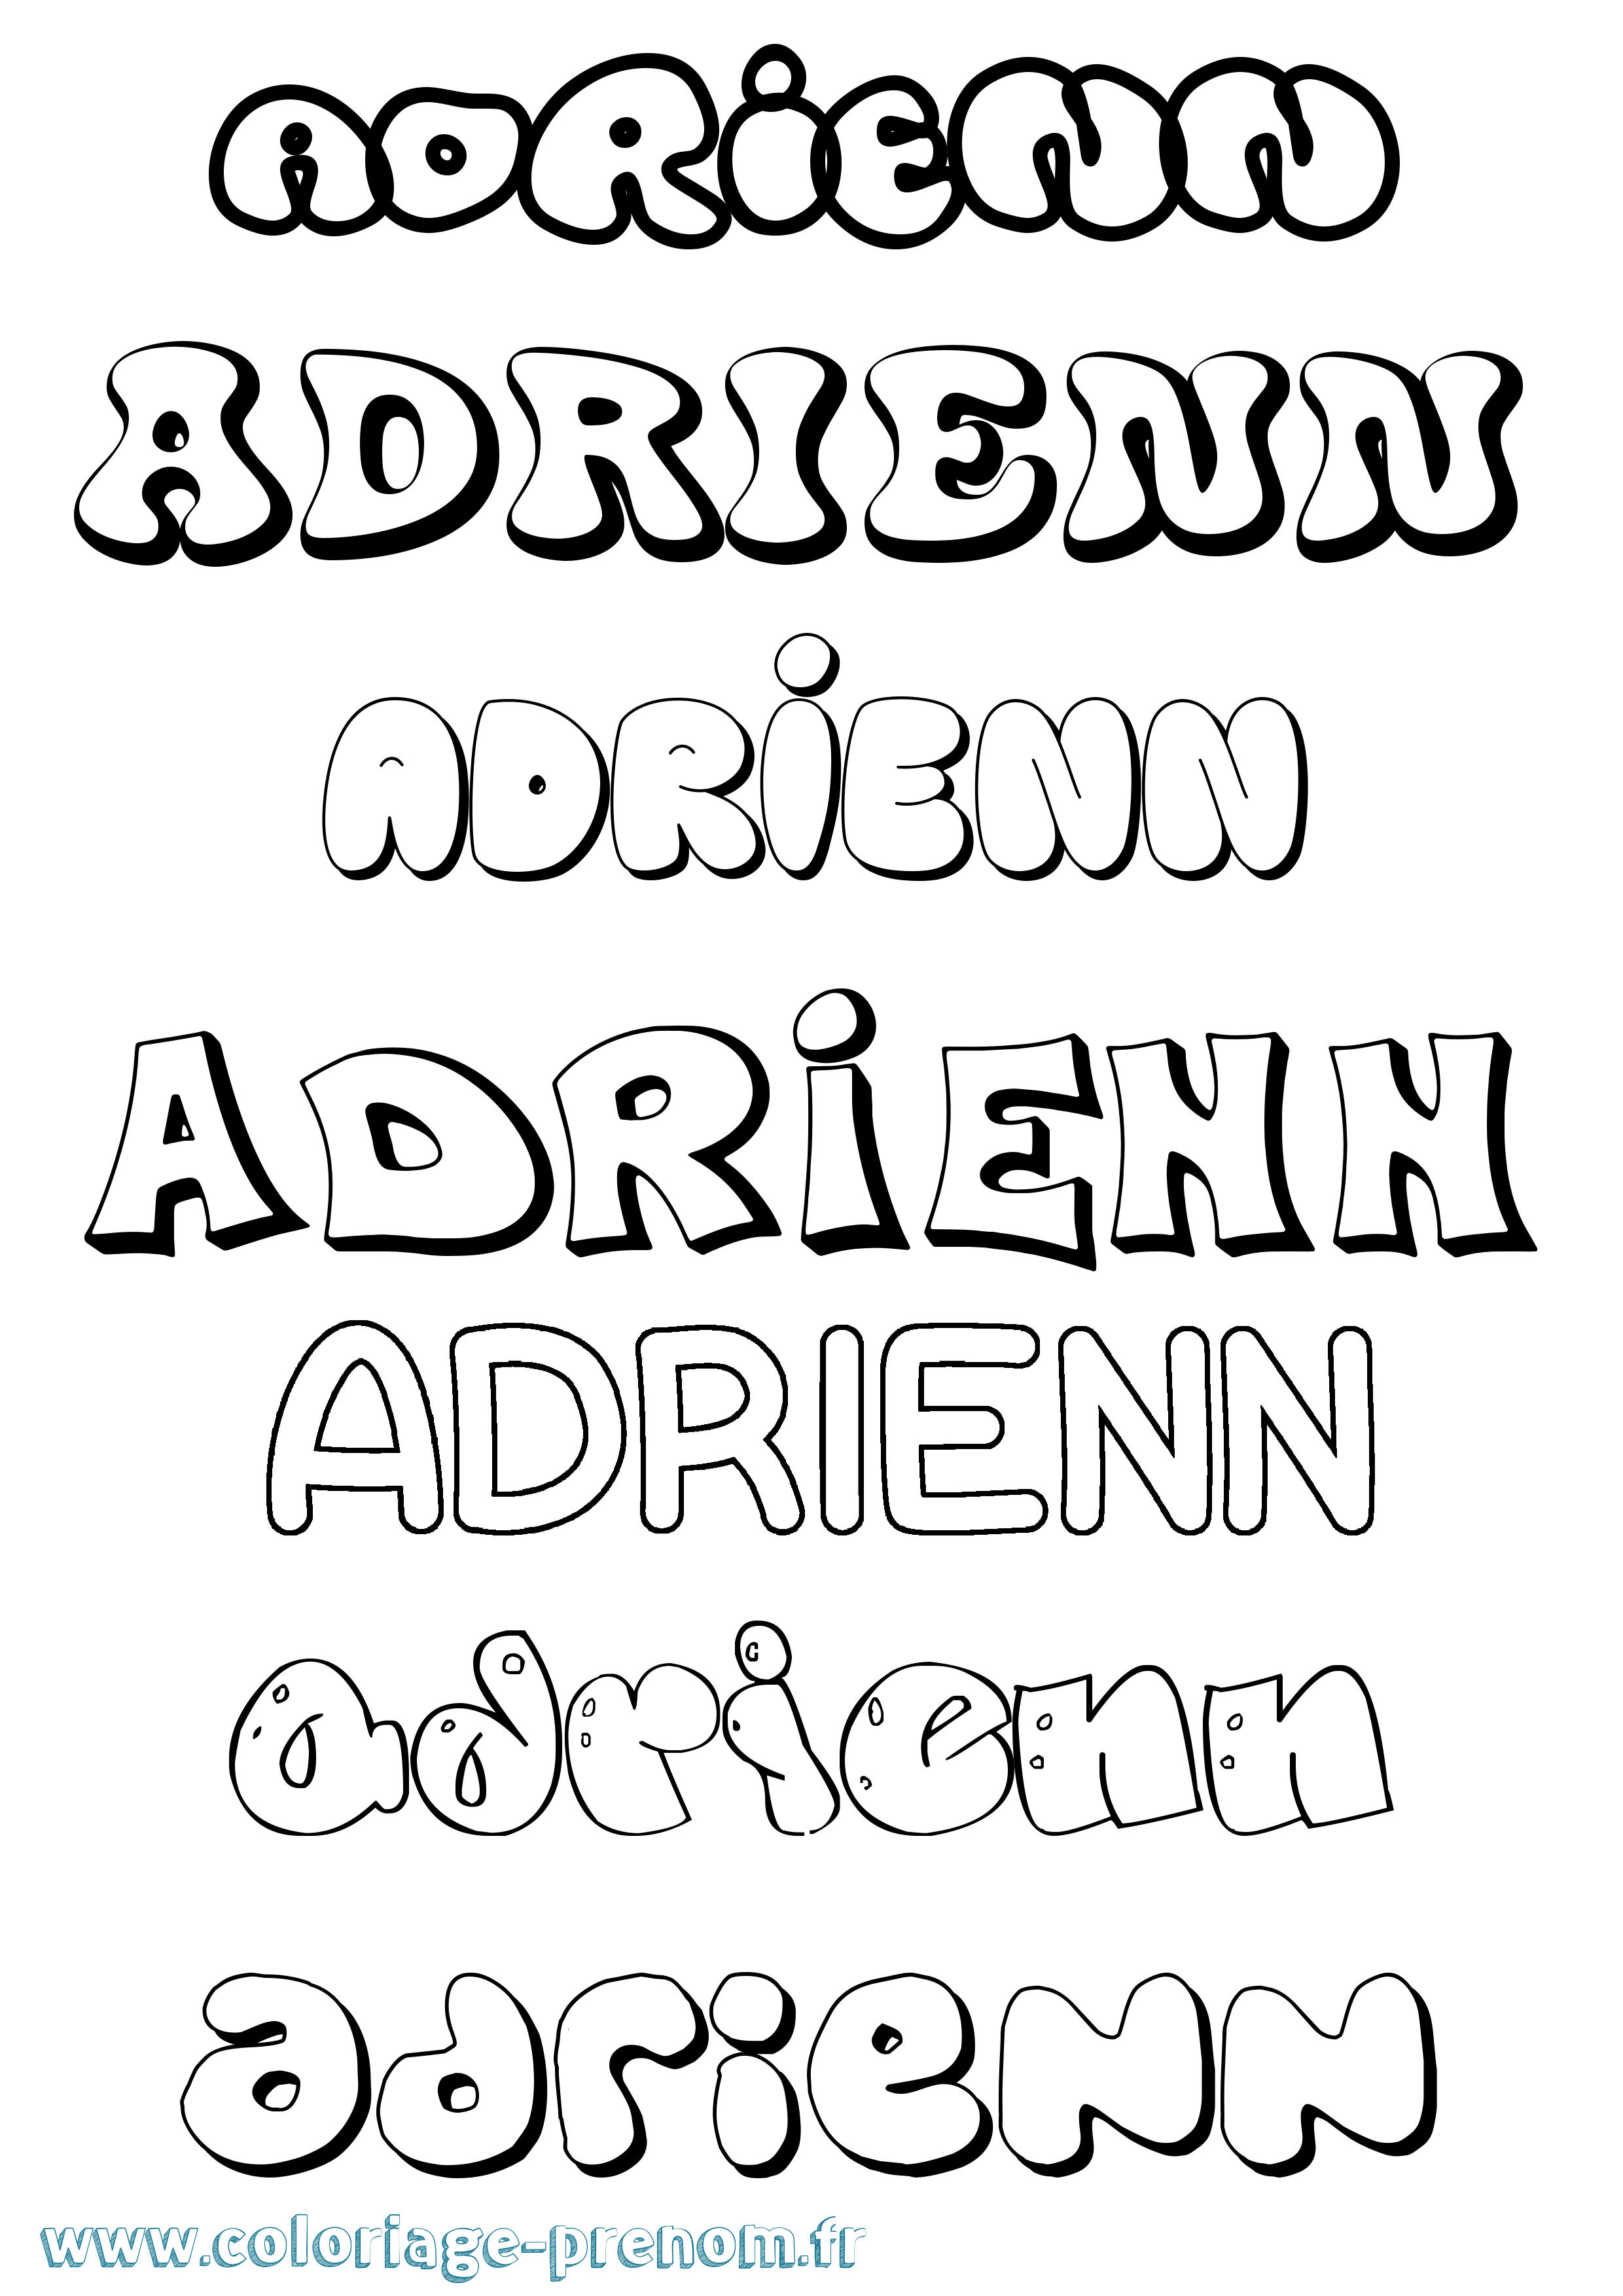 Coloriage prénom Adrienn Bubble